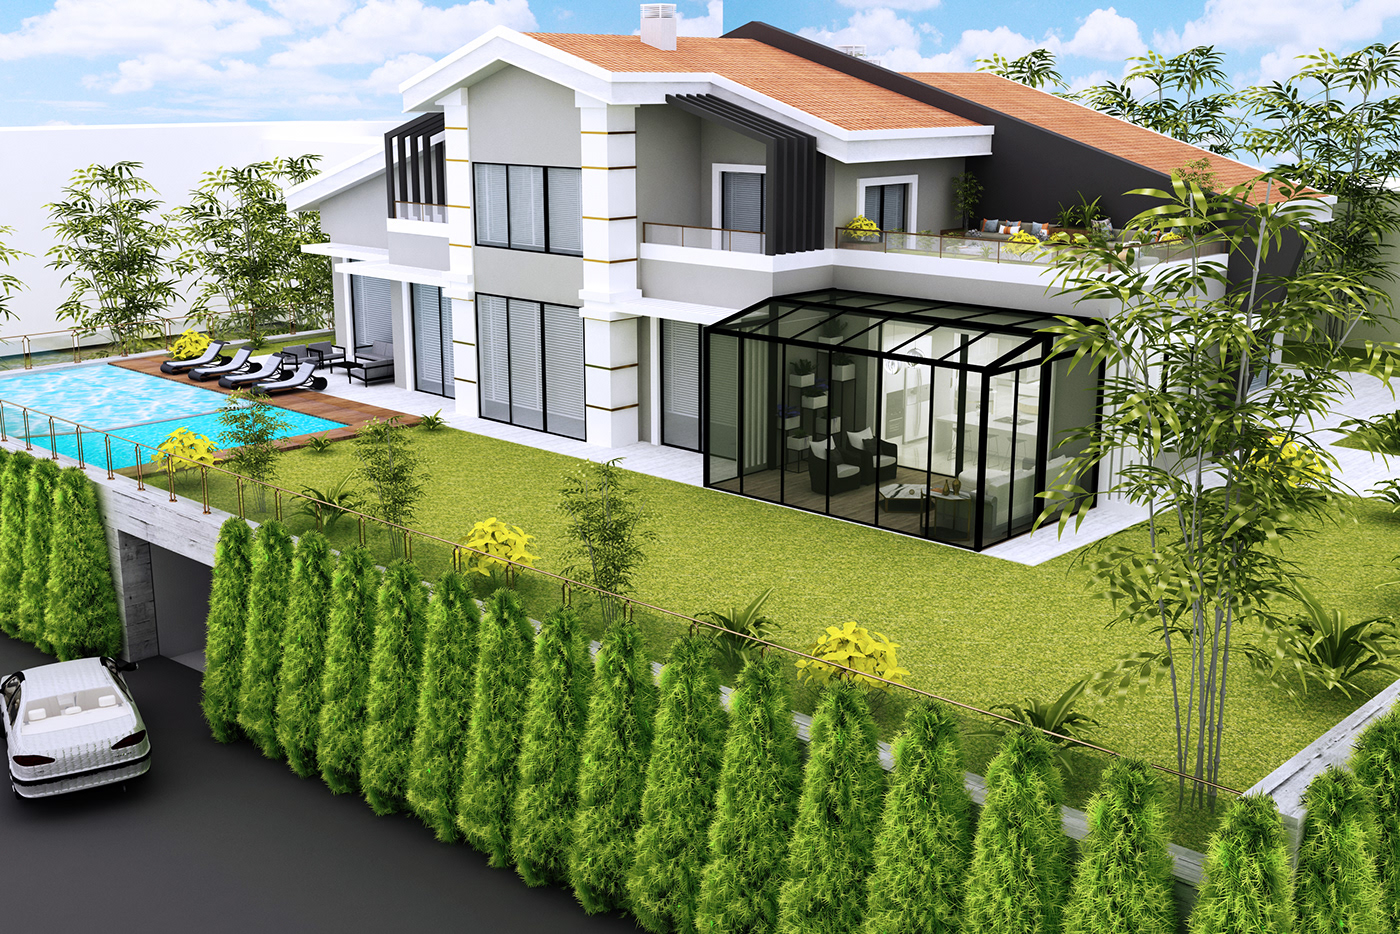 mimari mimarlık grafik tasarım Render iç mimarlık cephe dış cephe home house garden